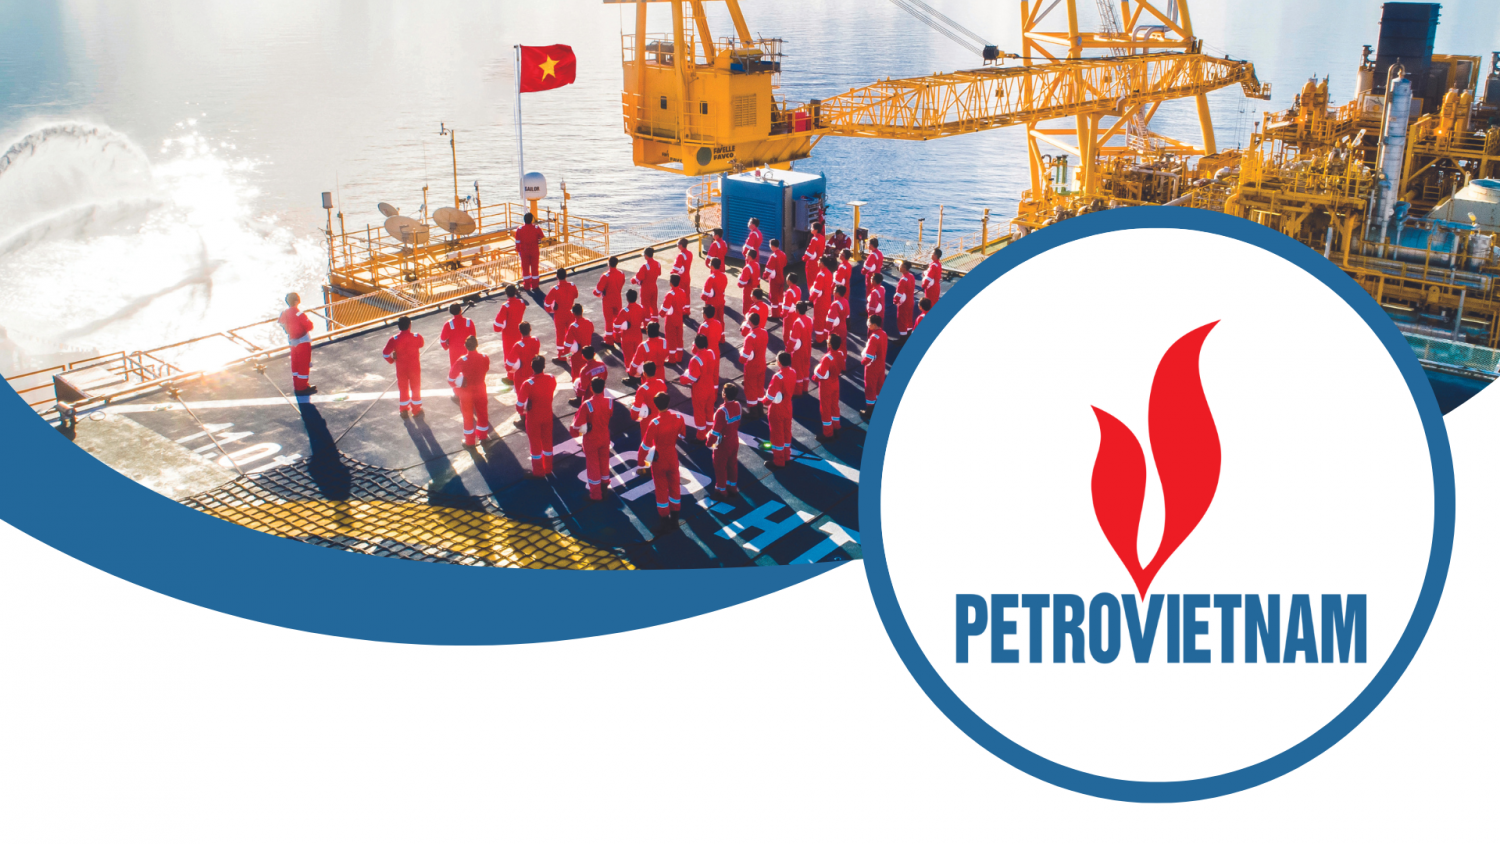 Petrovietnam phát triển vì một Tổ quốc Việt Nam vững mạnh, hùng cường